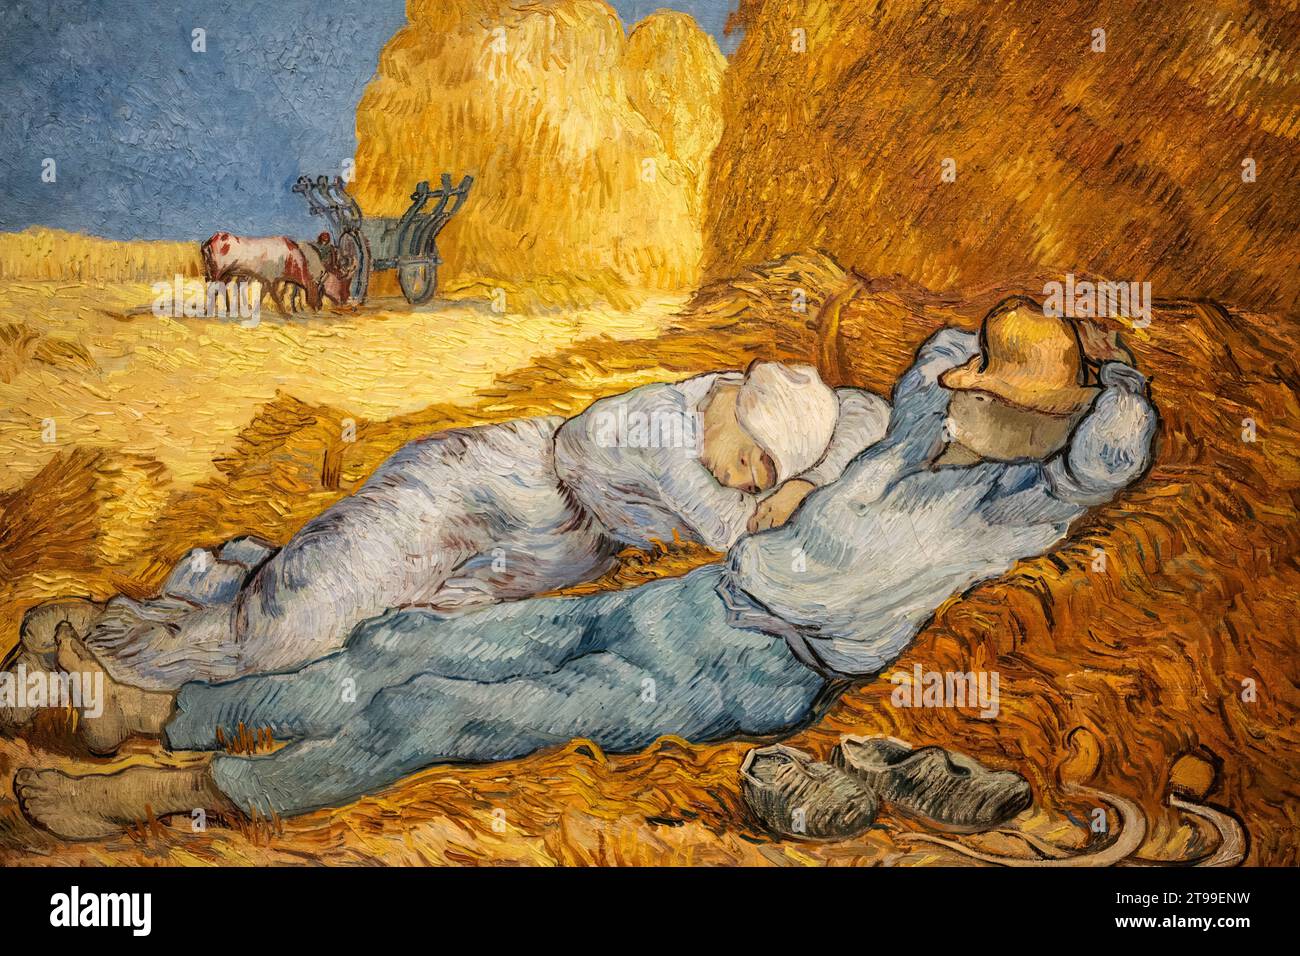 Dettaglio della pittura di Van Gogh nel Museo d'Orsay, Parigi, Francia. Foto Stock